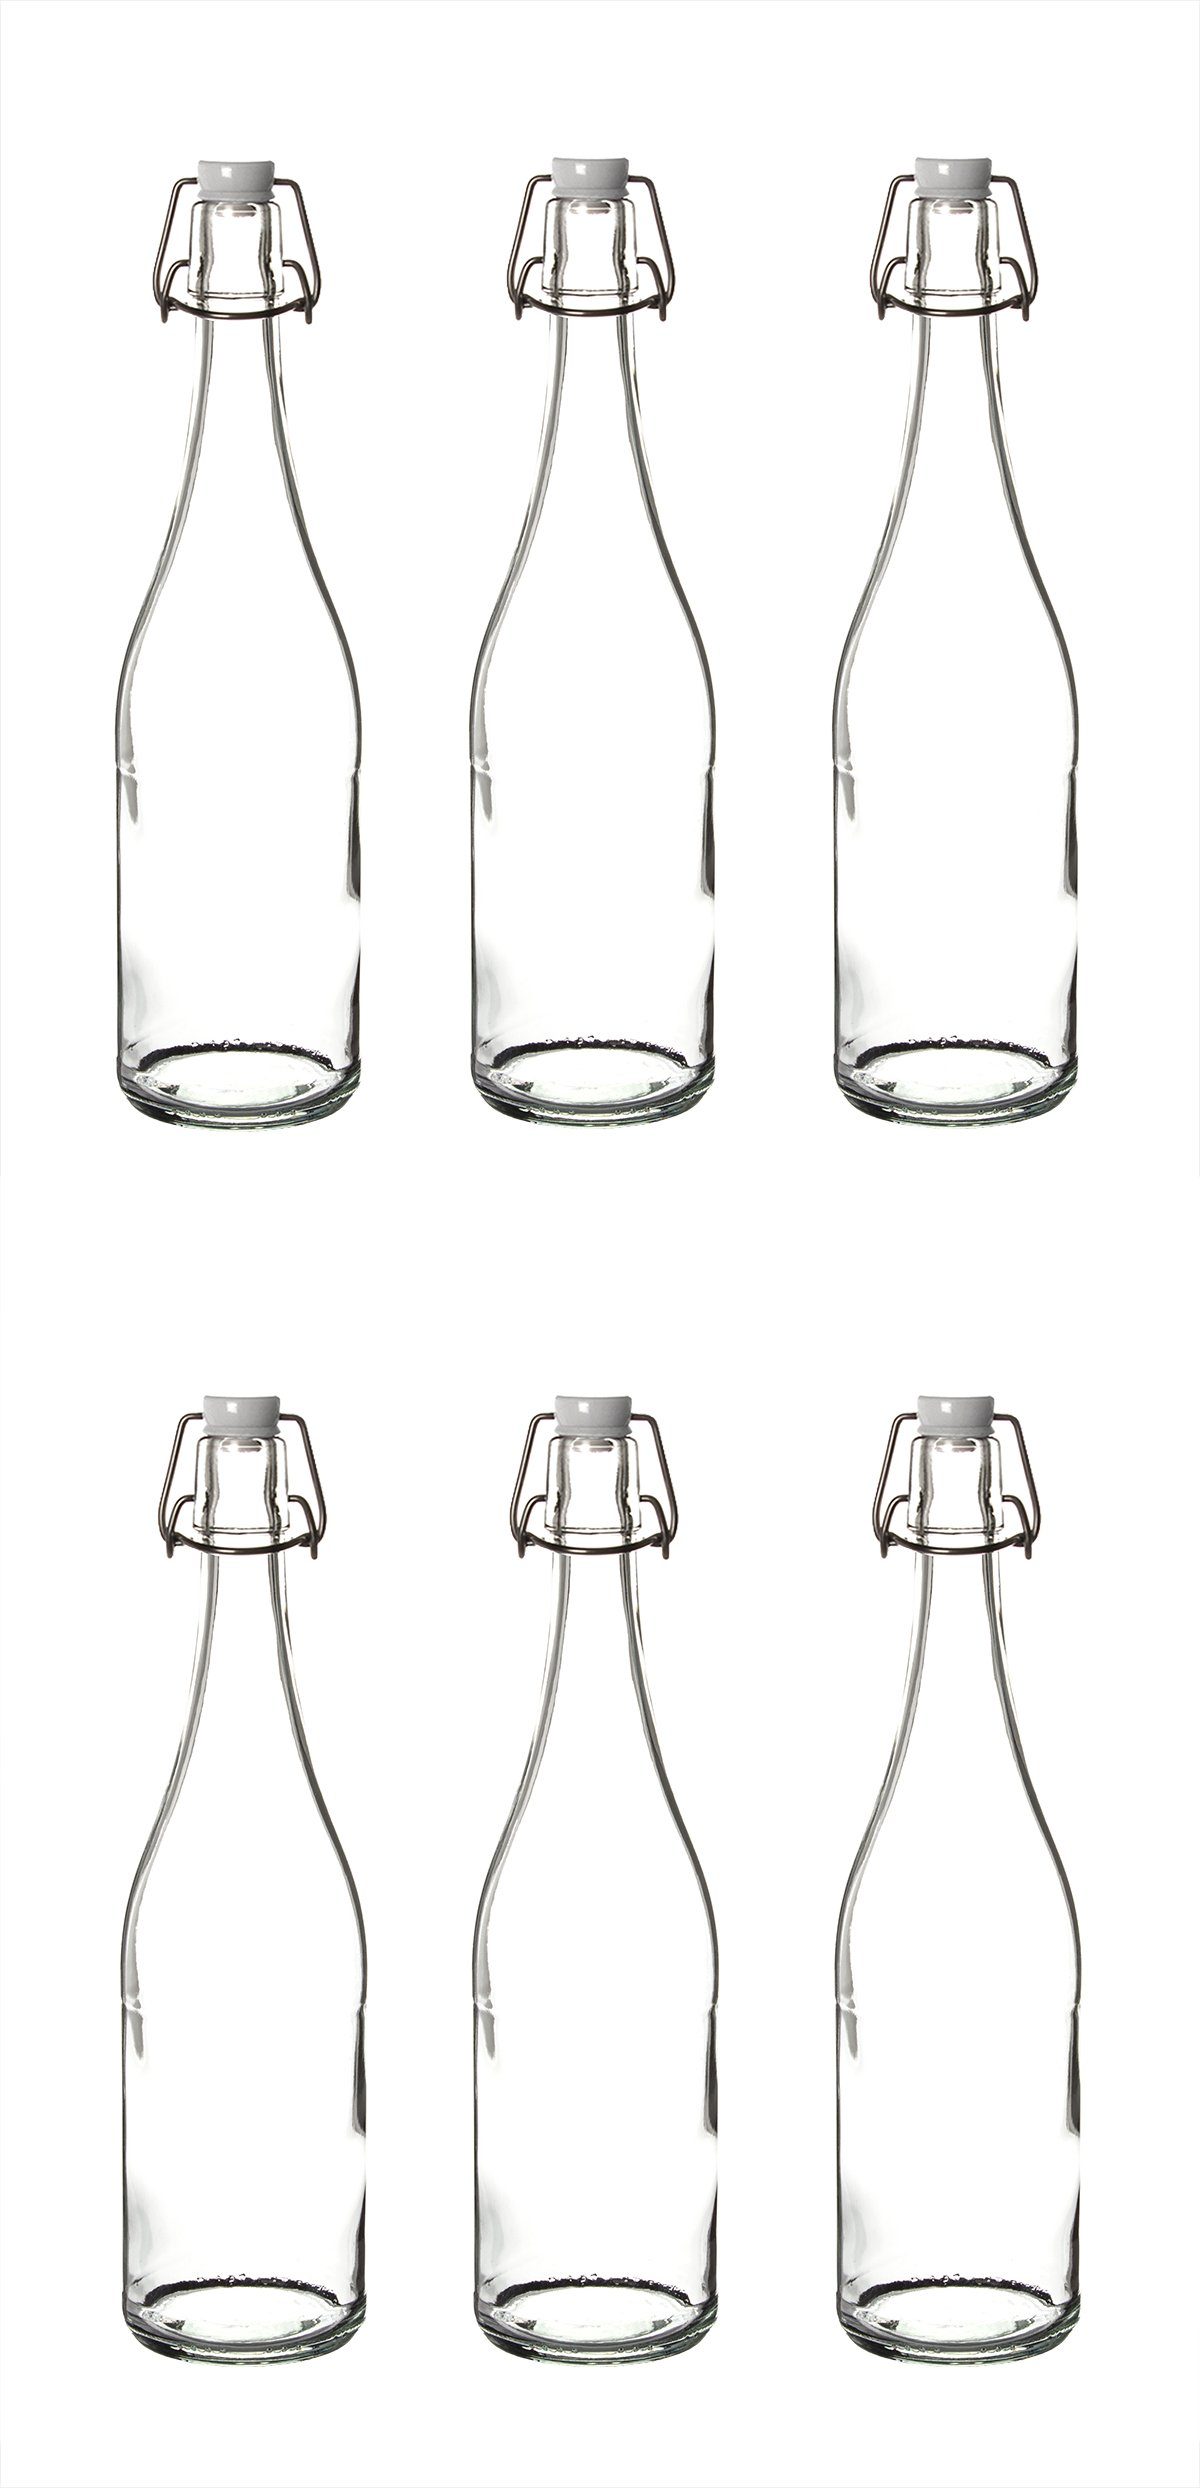 BigDean Trinkflasche 6x Glasflaschen mit Bügelverschluss 750ml −  Bügelflaschen zum Befüllen − Made in Germany − Bügelglasflaschen  Likörflaschen